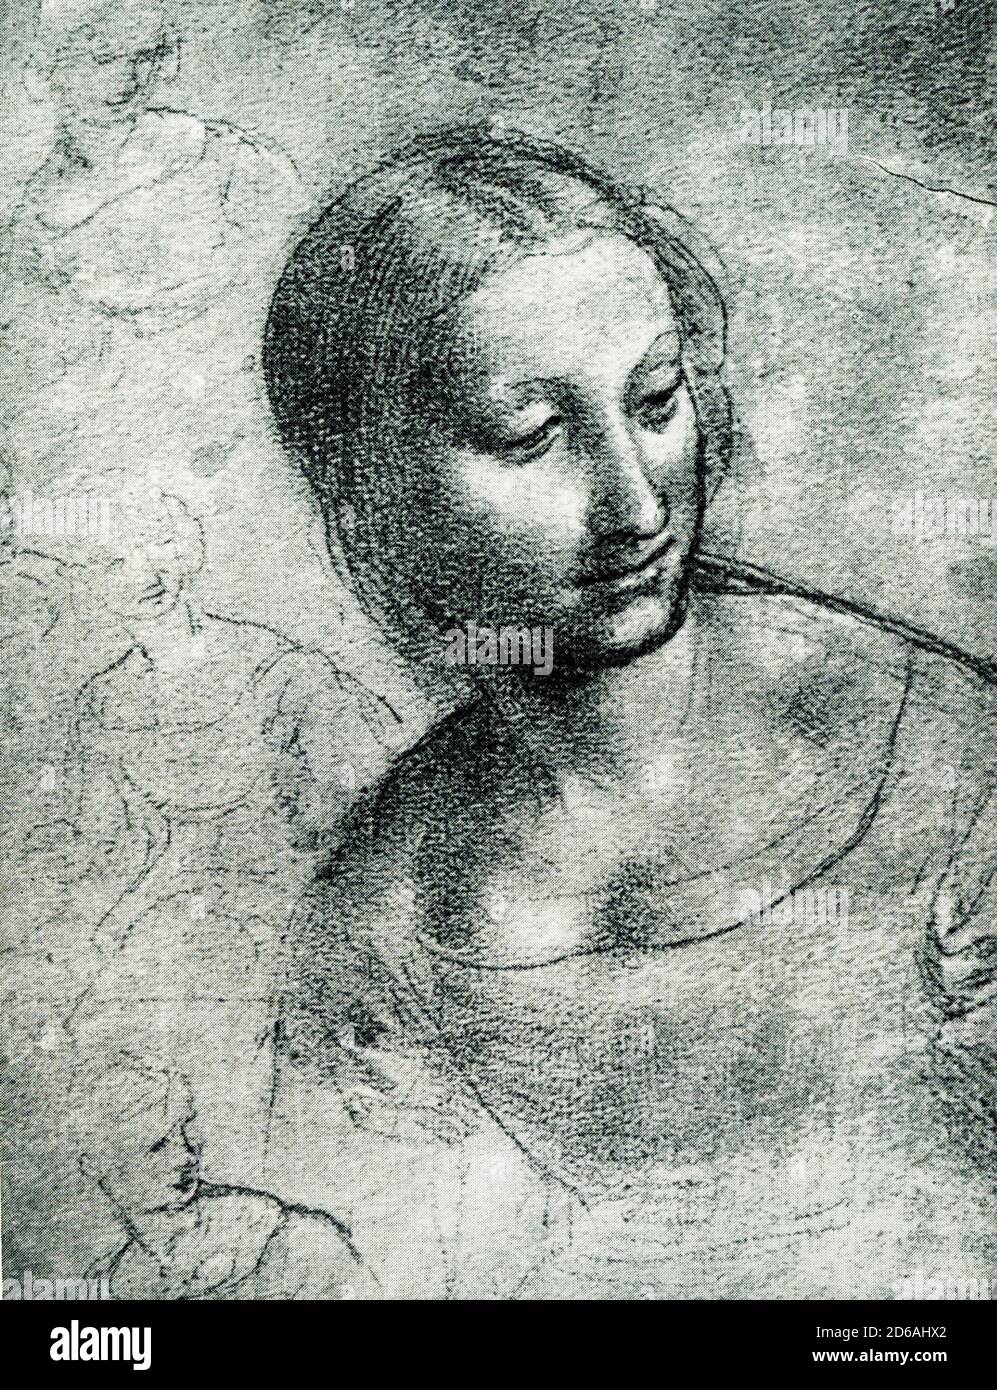 La tête de Sainte Anne du dessin de Léonard de Vinci (1453-1519) est à l'Académie des Beaux-Arts de Venise. Léonard de Vinci était un polymath italien de la haute Renaissance qui est largement considéré comme l'un des plus grands peintres de tous les temps. La Mona Lisa est la plus célèbre des œuvres de Léonard et le portrait le plus célèbre jamais fait. Banque D'Images